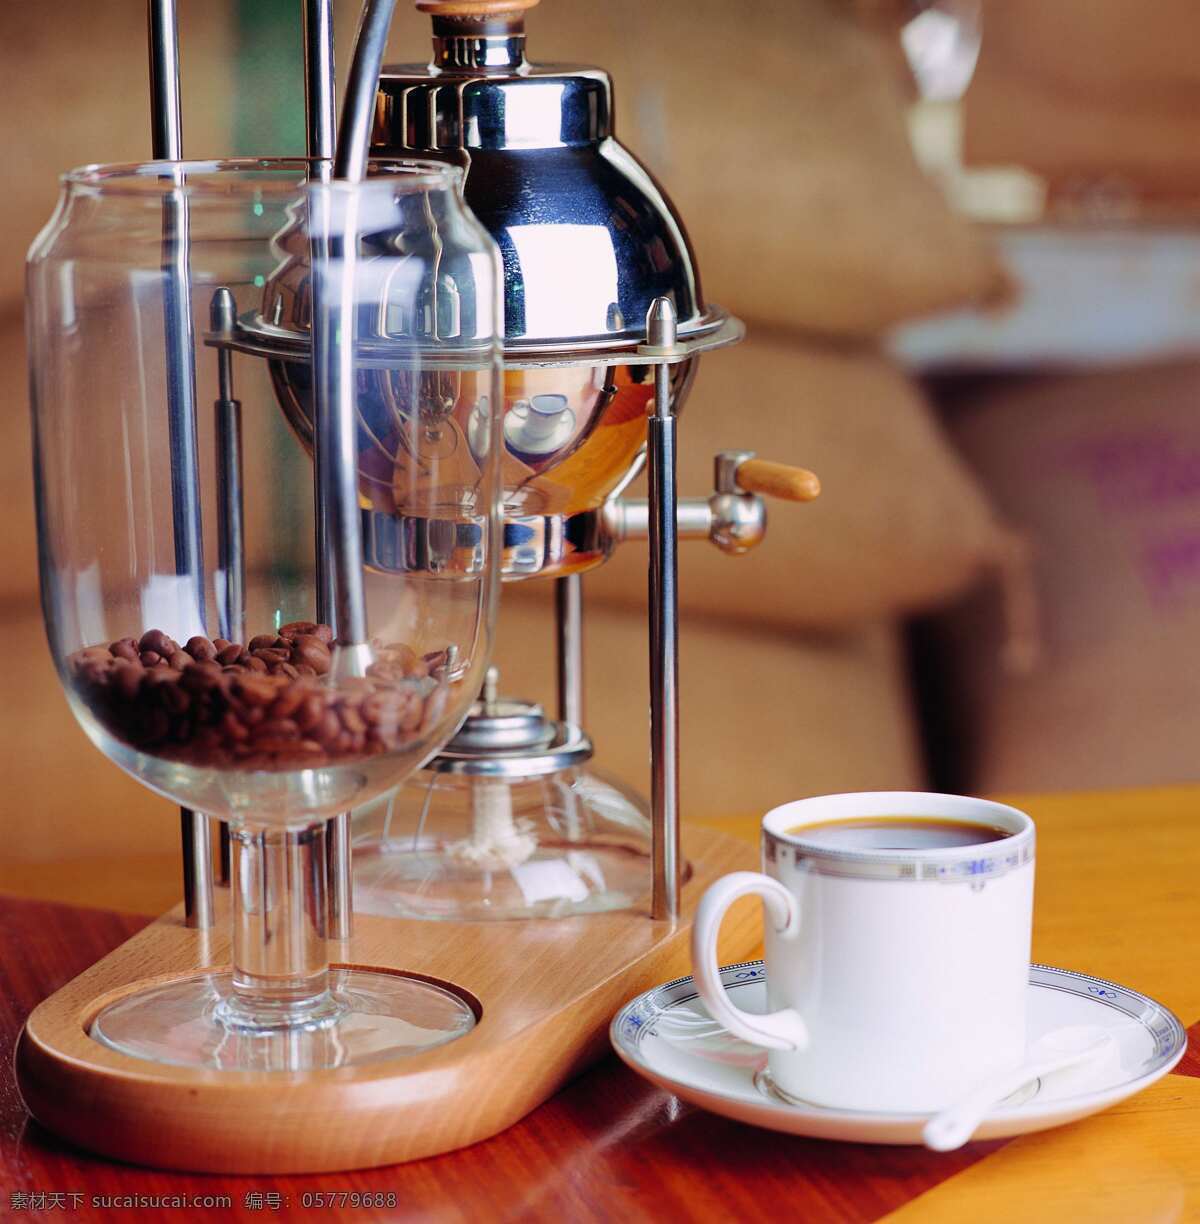 加工 咖啡 工具 咖啡杯 制作 容器 煮好的咖啡 加工咖啡流程 咖啡杯碟 咖啡制作方法 风景 生活 旅游餐饮